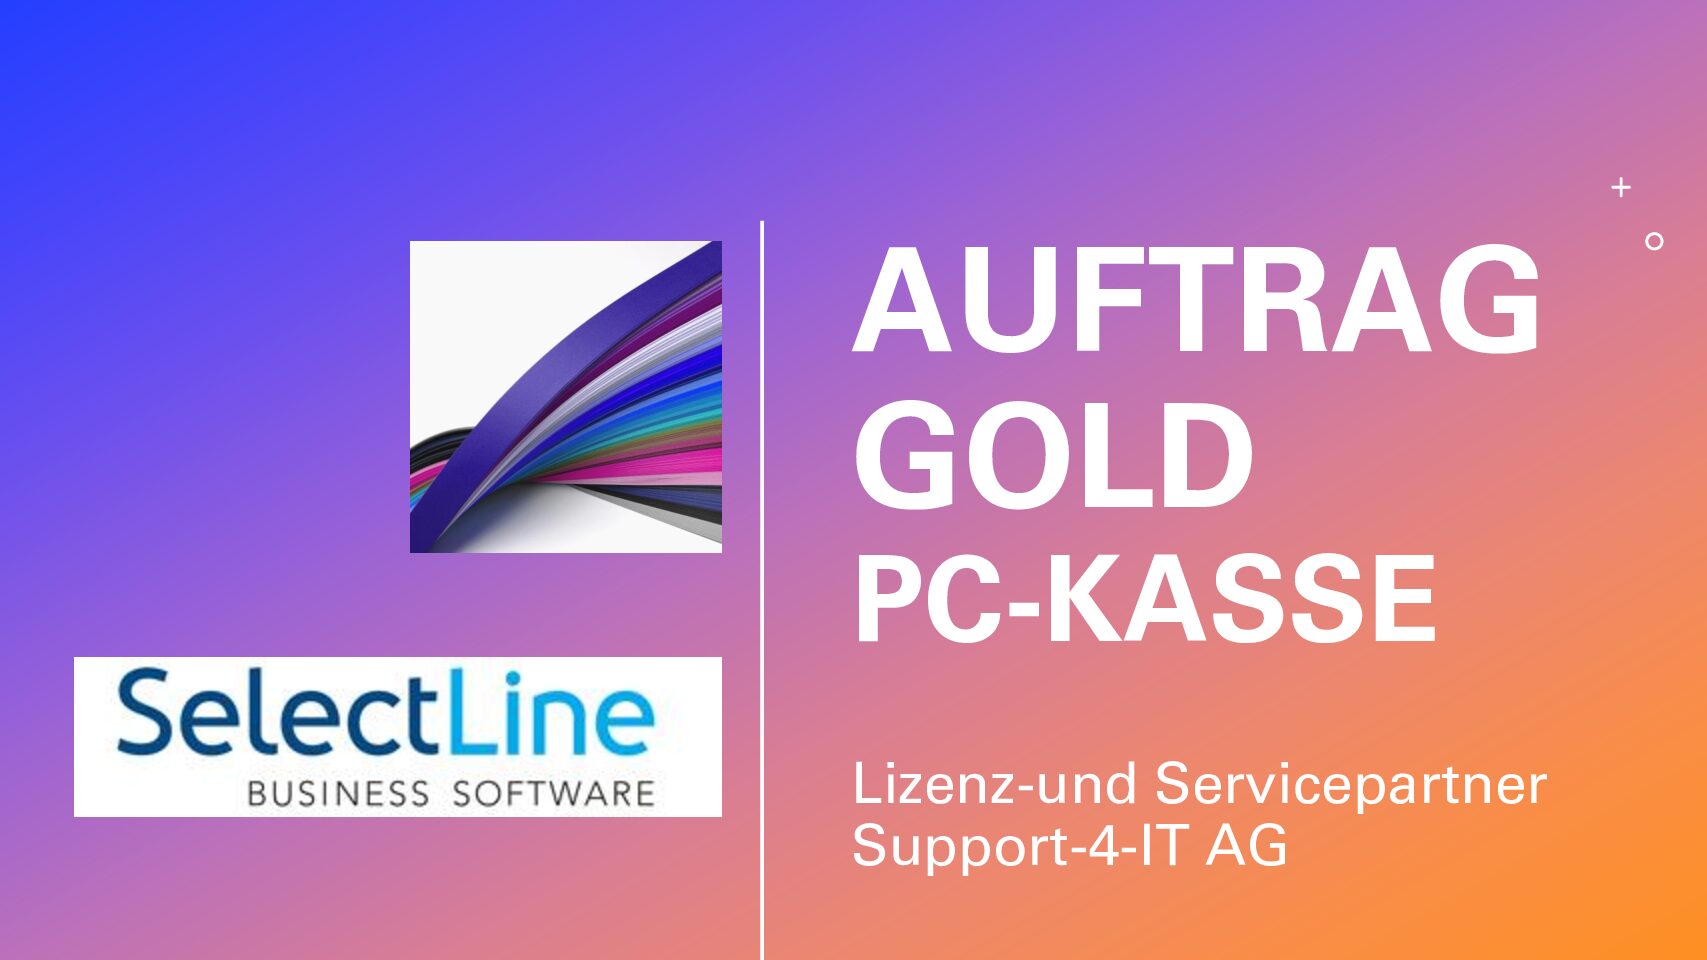 SelectLine PC-Kasse im Auftrag Gold - Support-4-IT AG 1